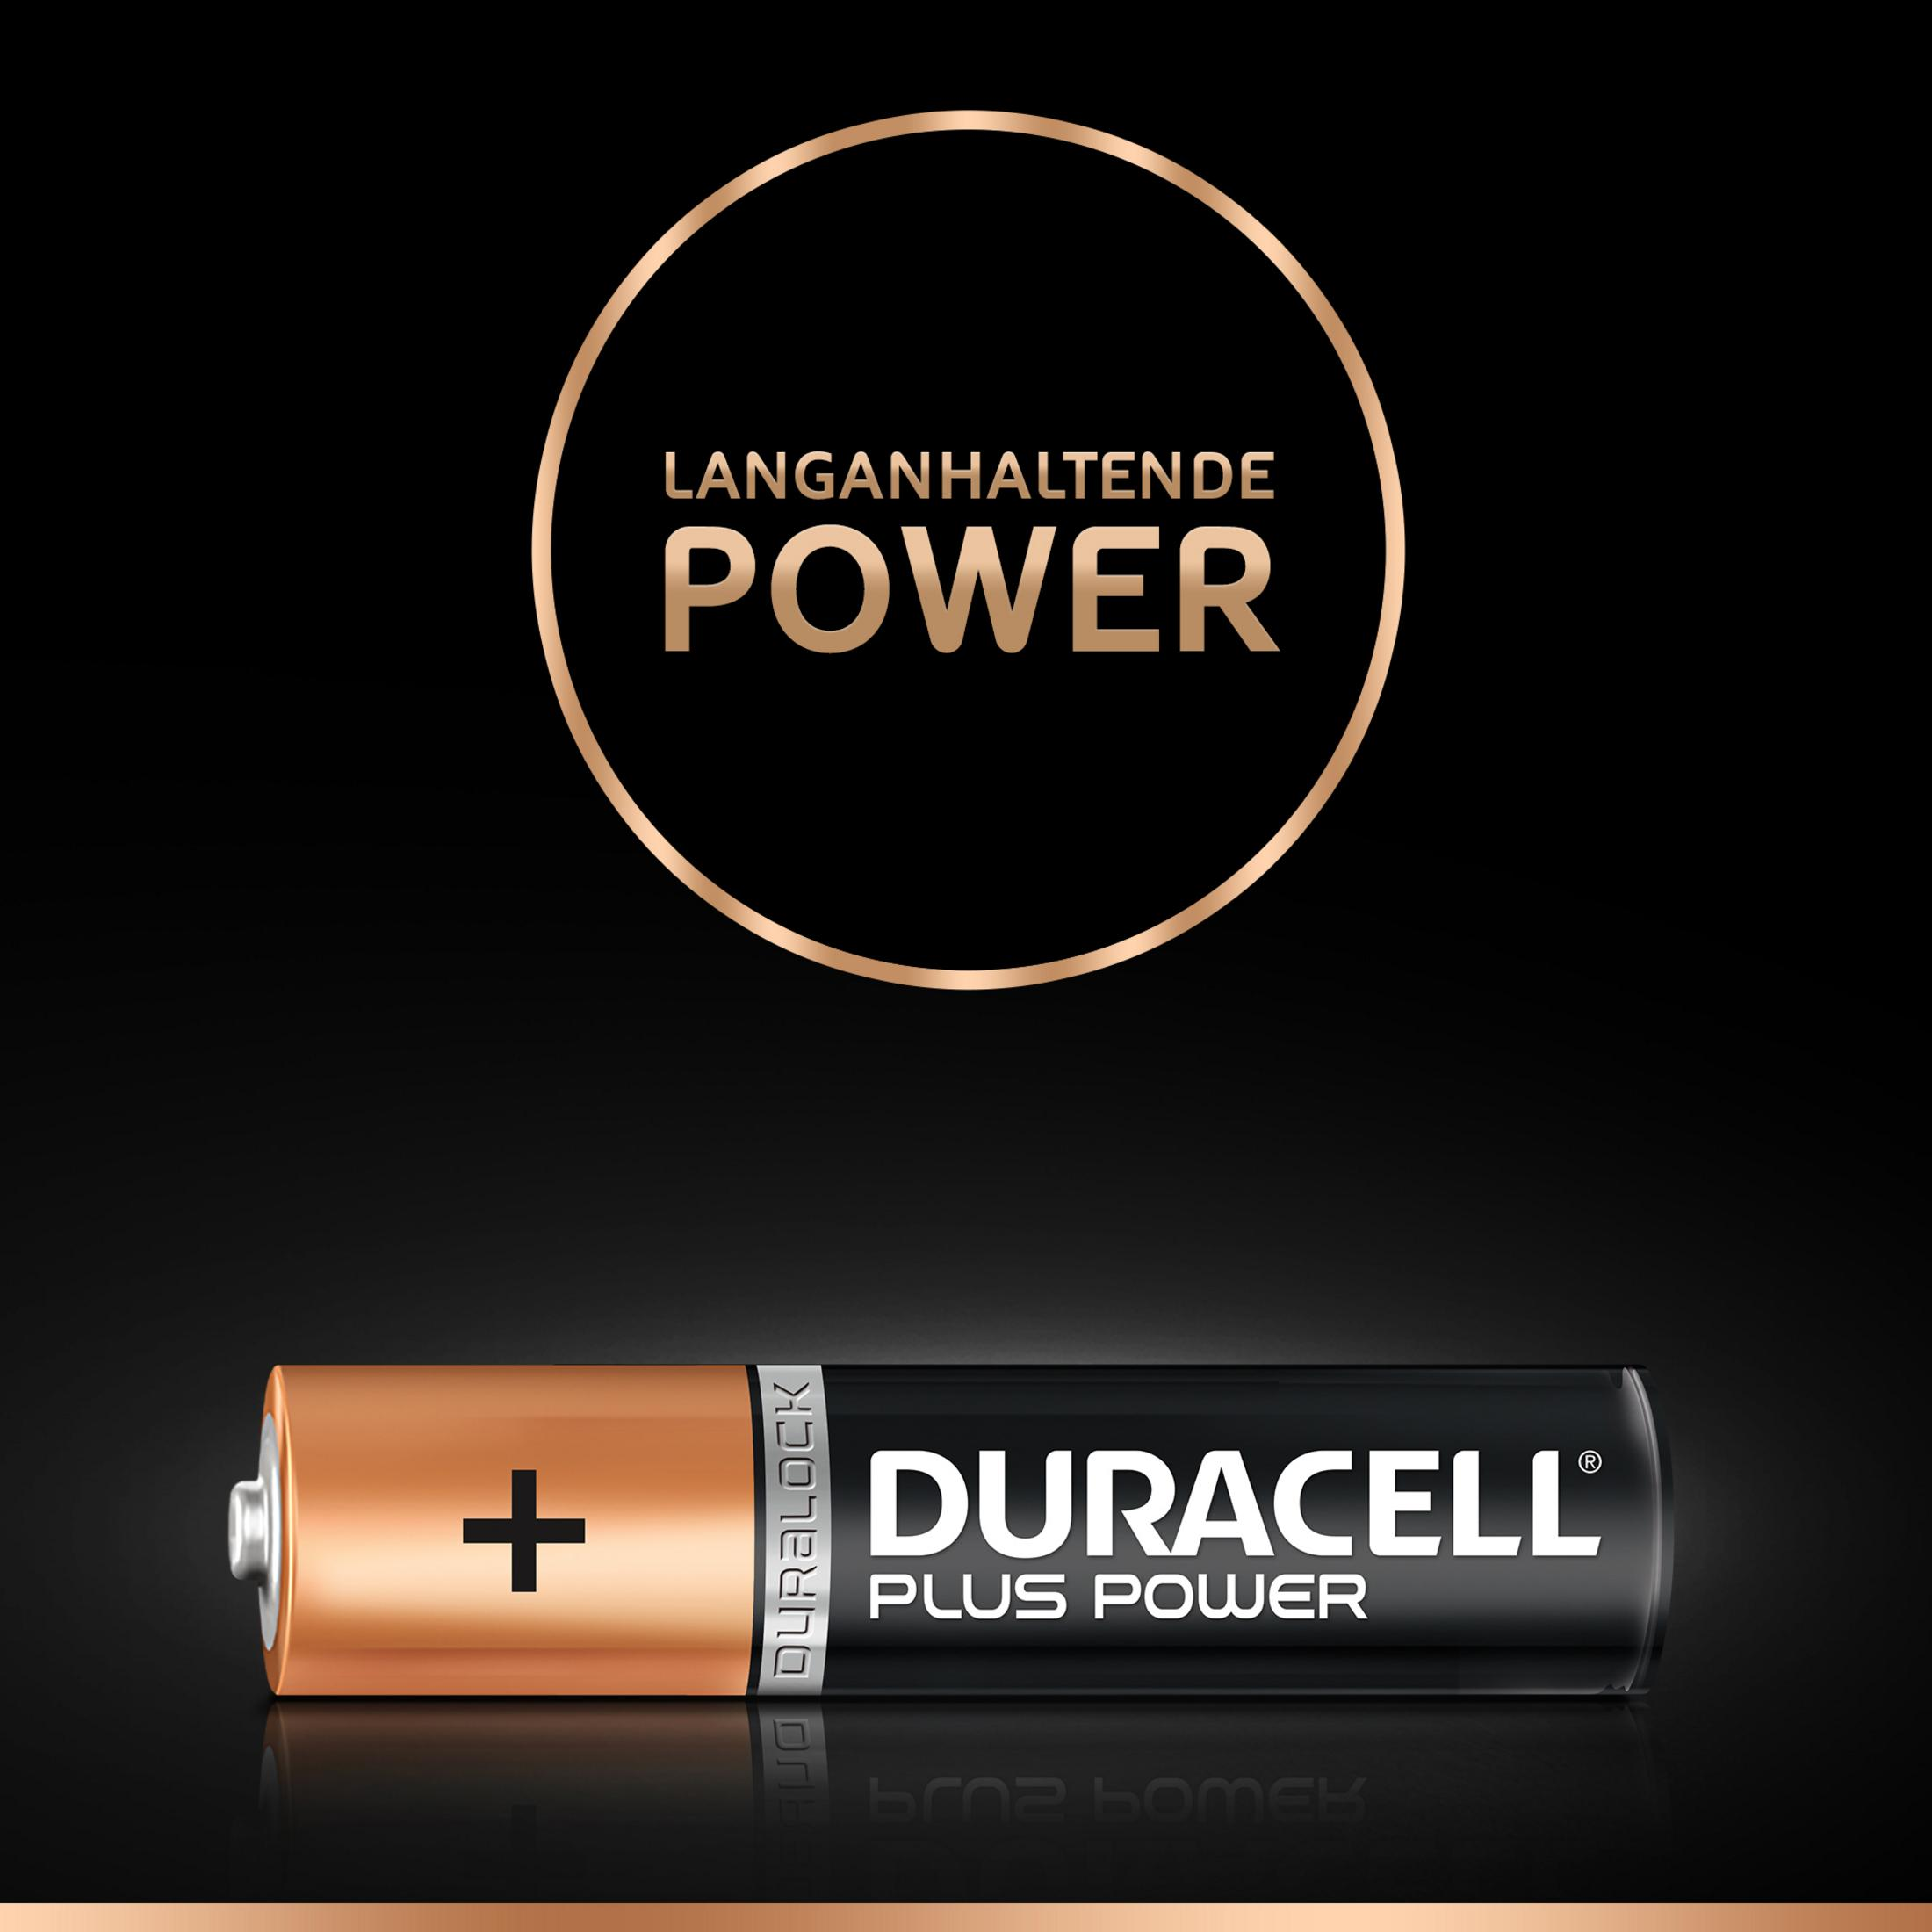 DURACELL 019058 POWER-AAA MN2400/LR6 Batterie, 24 Volt Alkaline, Stück BP20+4 Micro 1.5 AAA